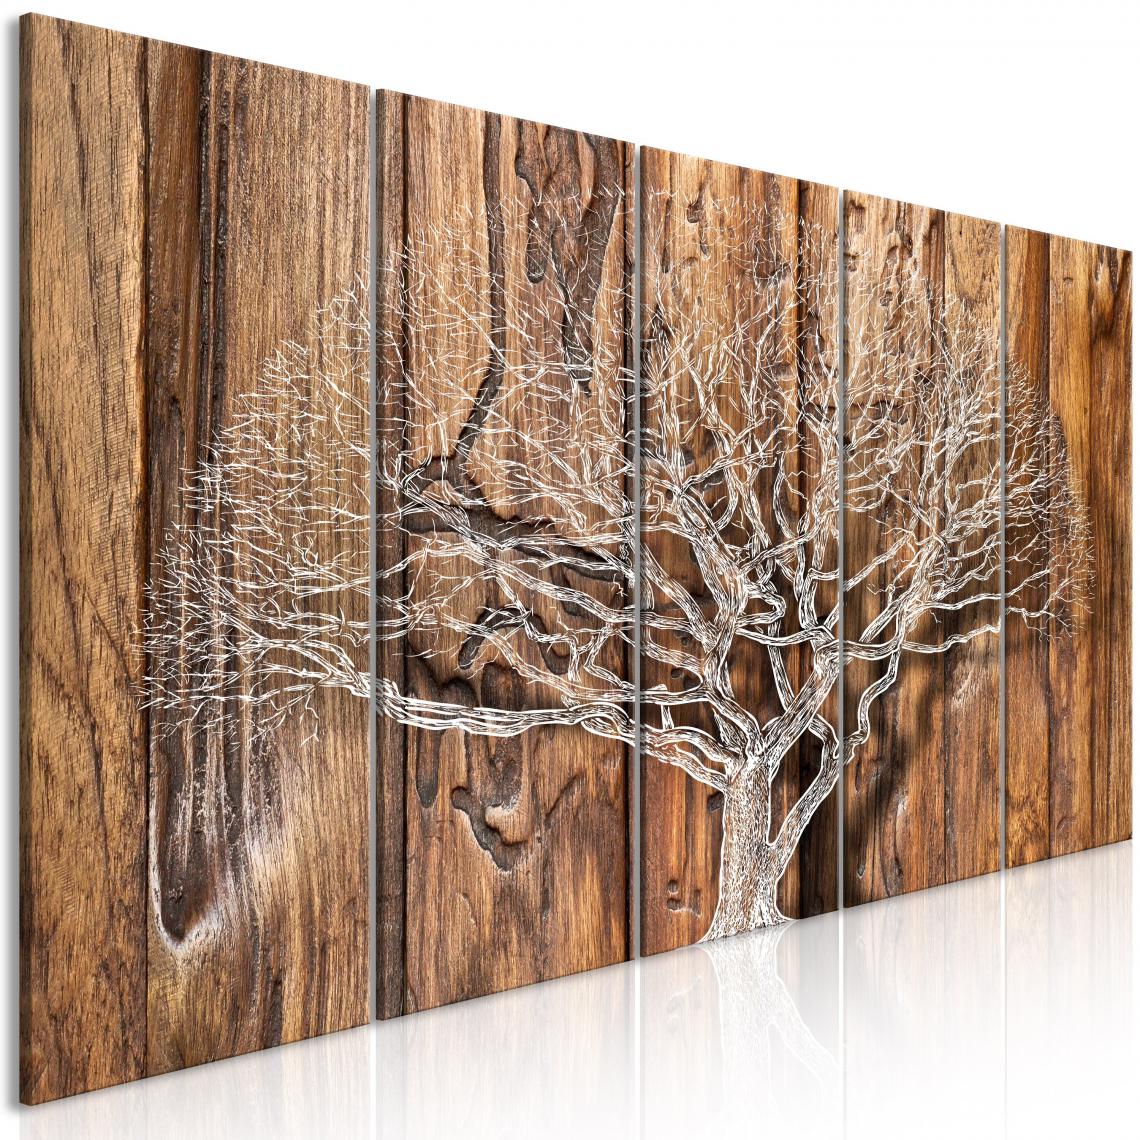 Decoshop26 - Tableau sur toile en 5 panneaux décoration murale image imprimée cadre en bois à suspendre Chronique de l'arbre(5 parties) Étroit 200x80 cm 11_0006030 - Tableaux, peintures